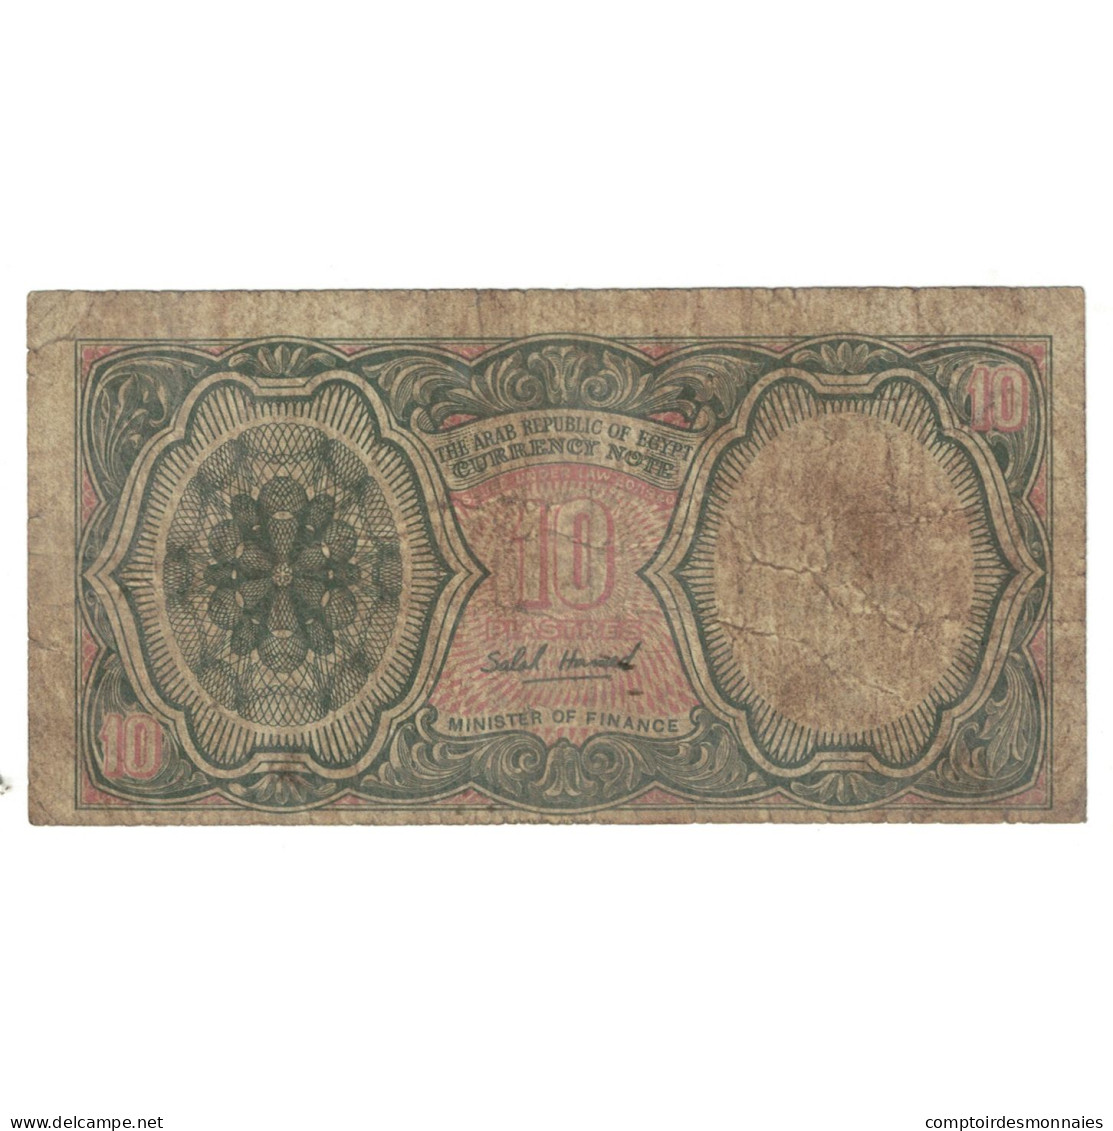 Billet, Égypte, 10 Piastres, L.1940, KM:183a, B - Egypt